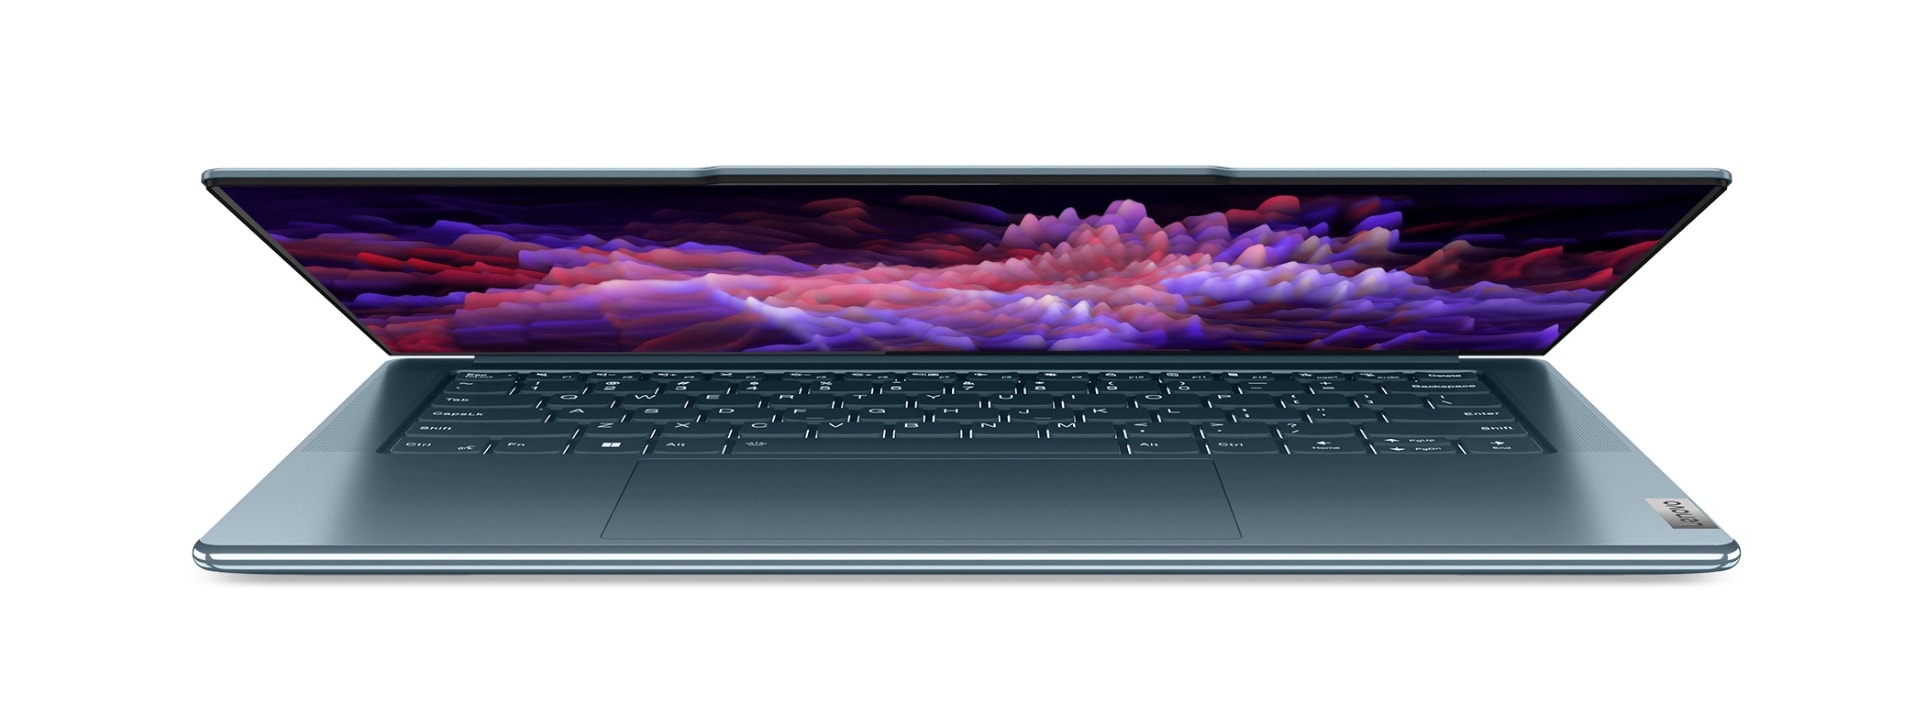 Полуотворен преден изглед на лаптоп Lenovo Yoga